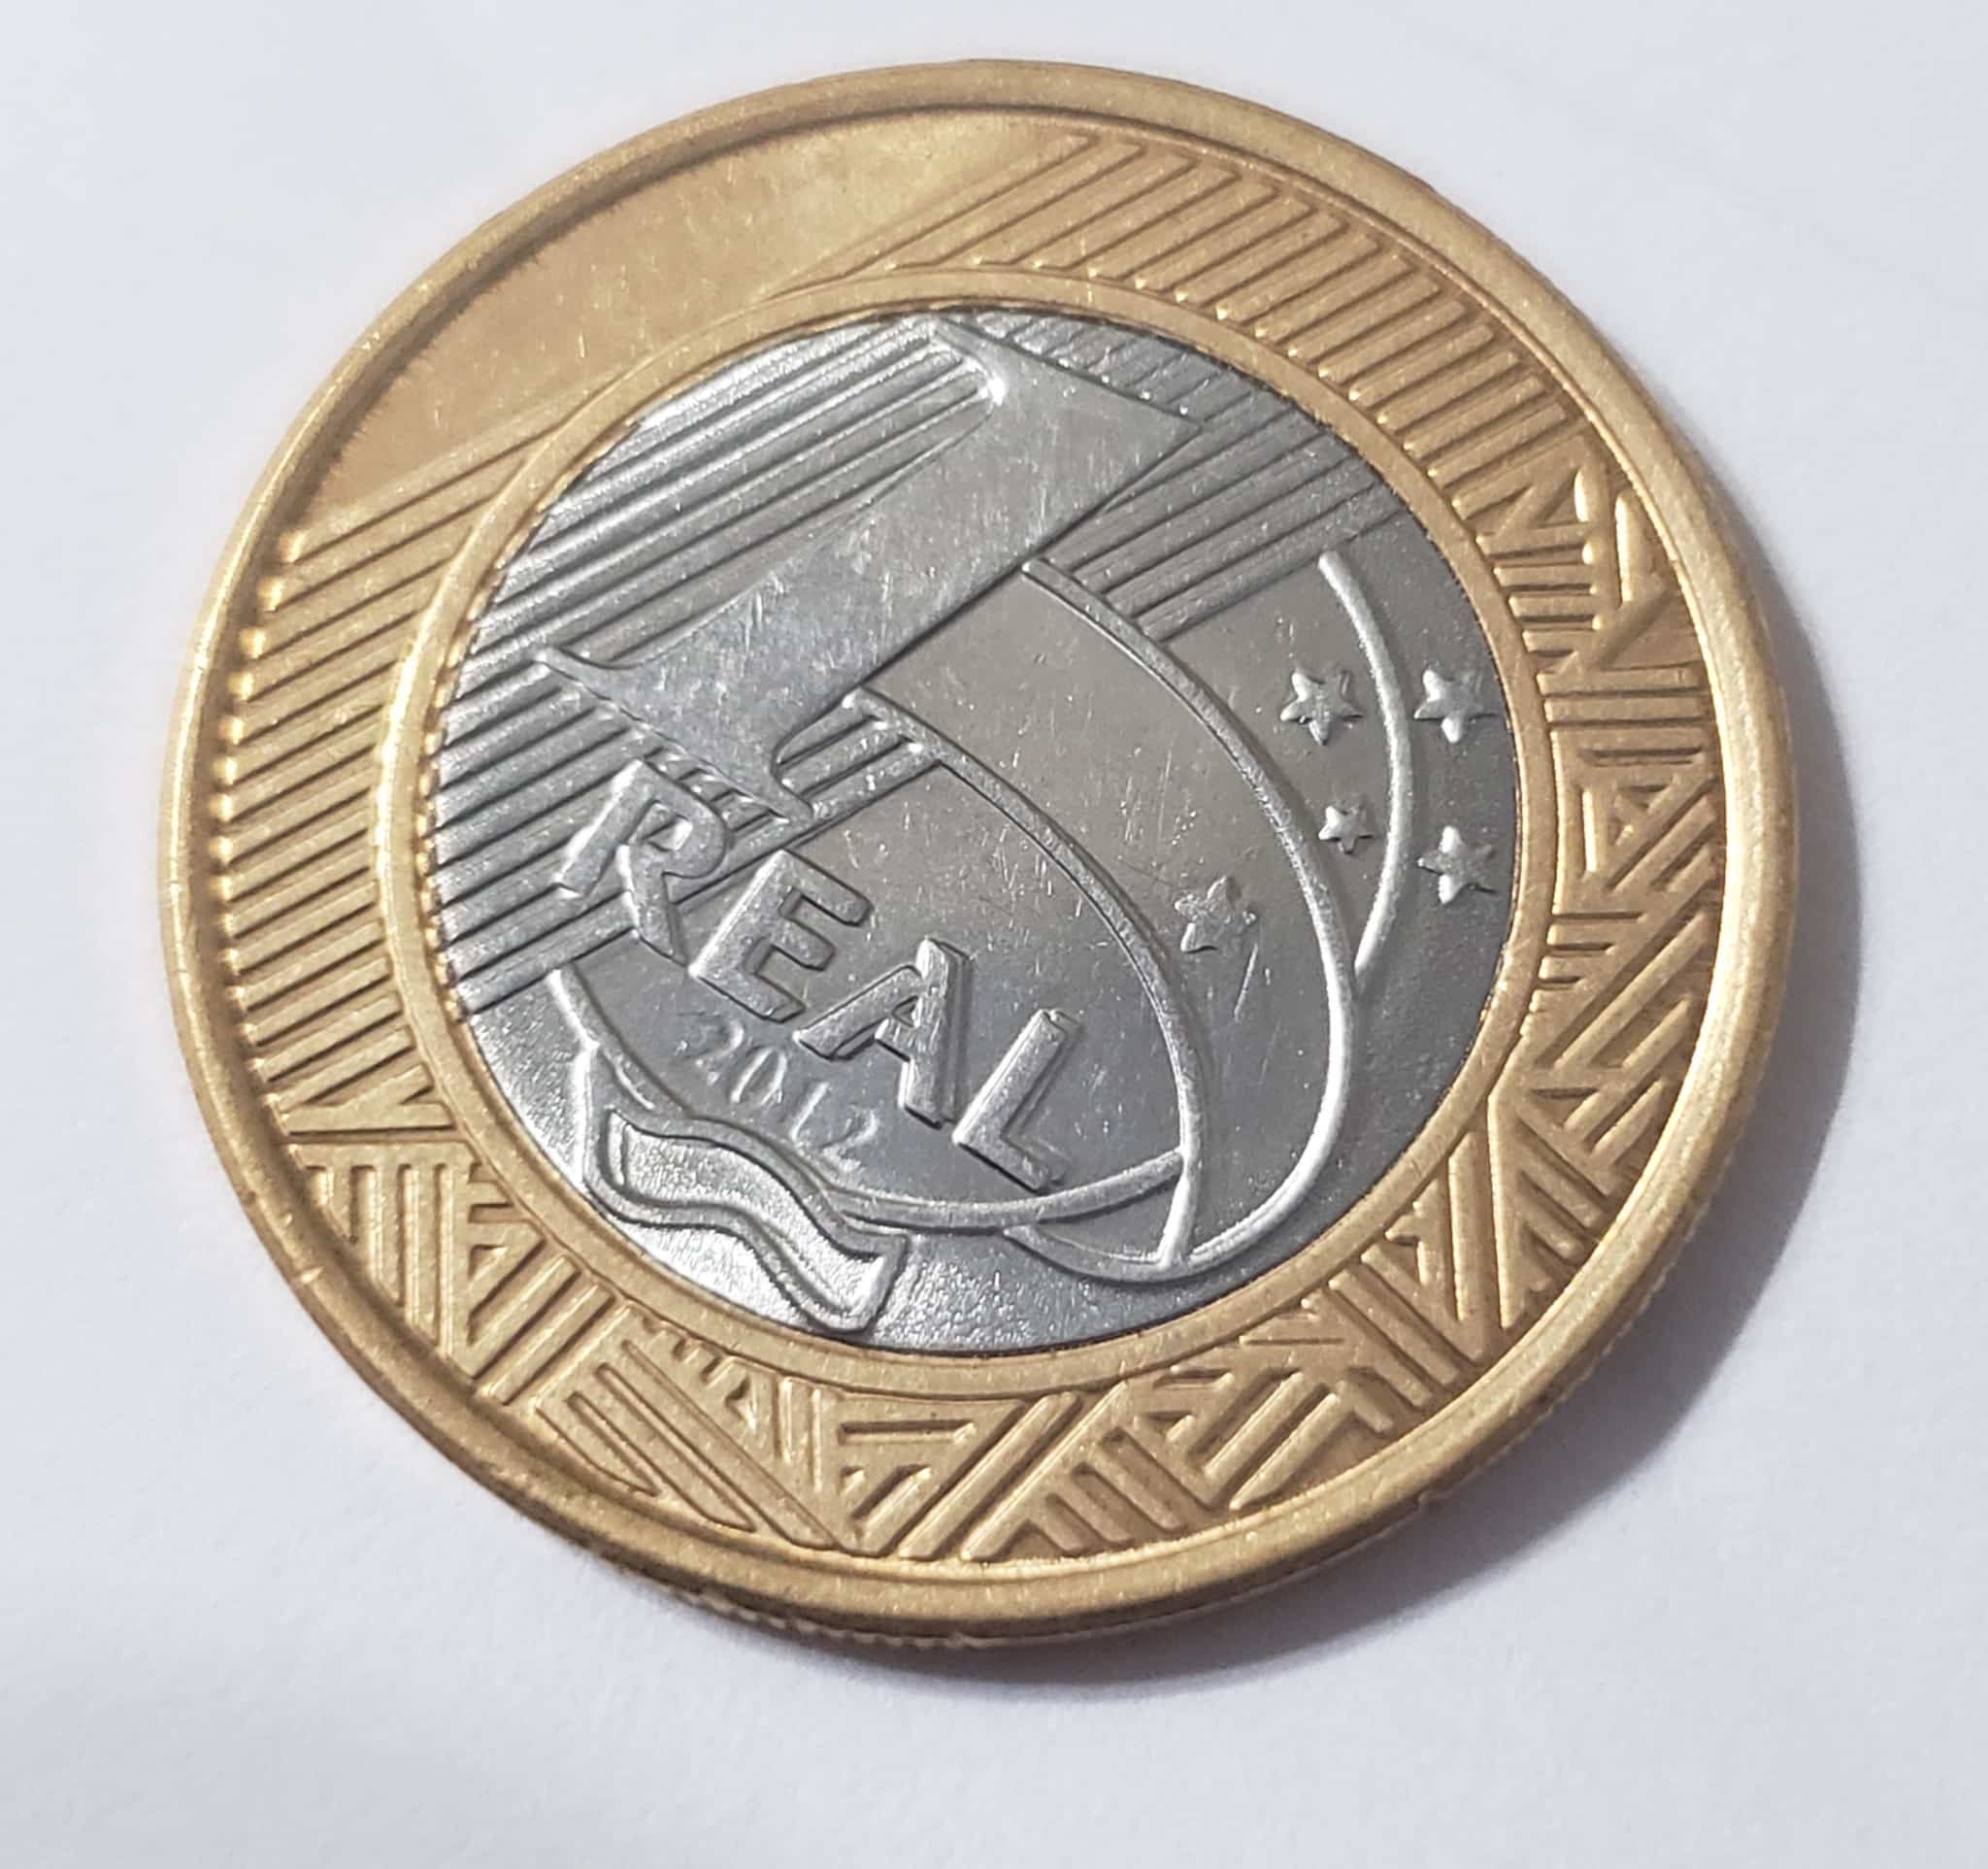 Exemplo de moeda de 1 real de 2012